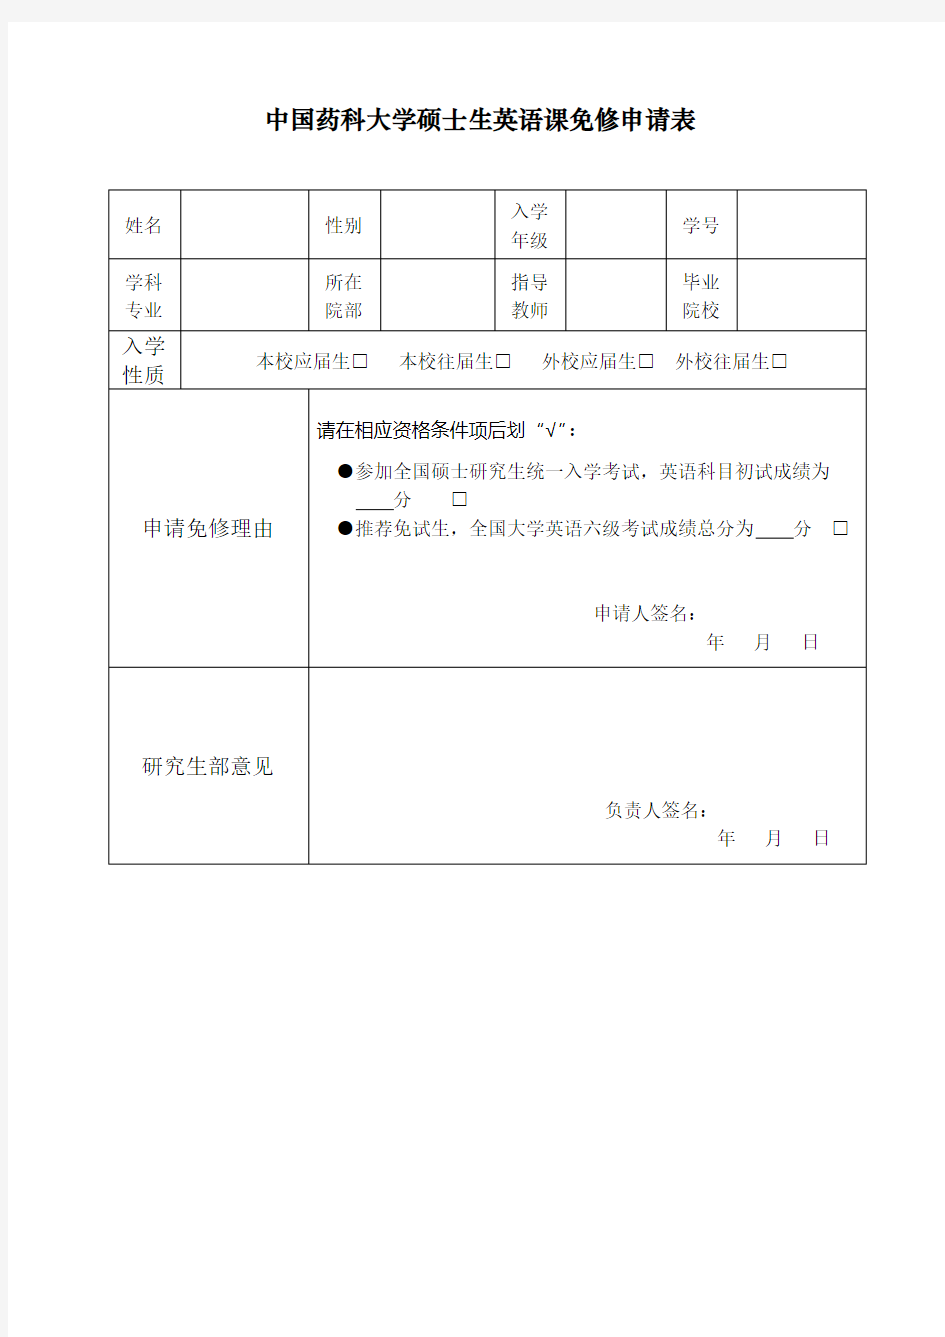 中国药科大学硕士生英语课免修申请表